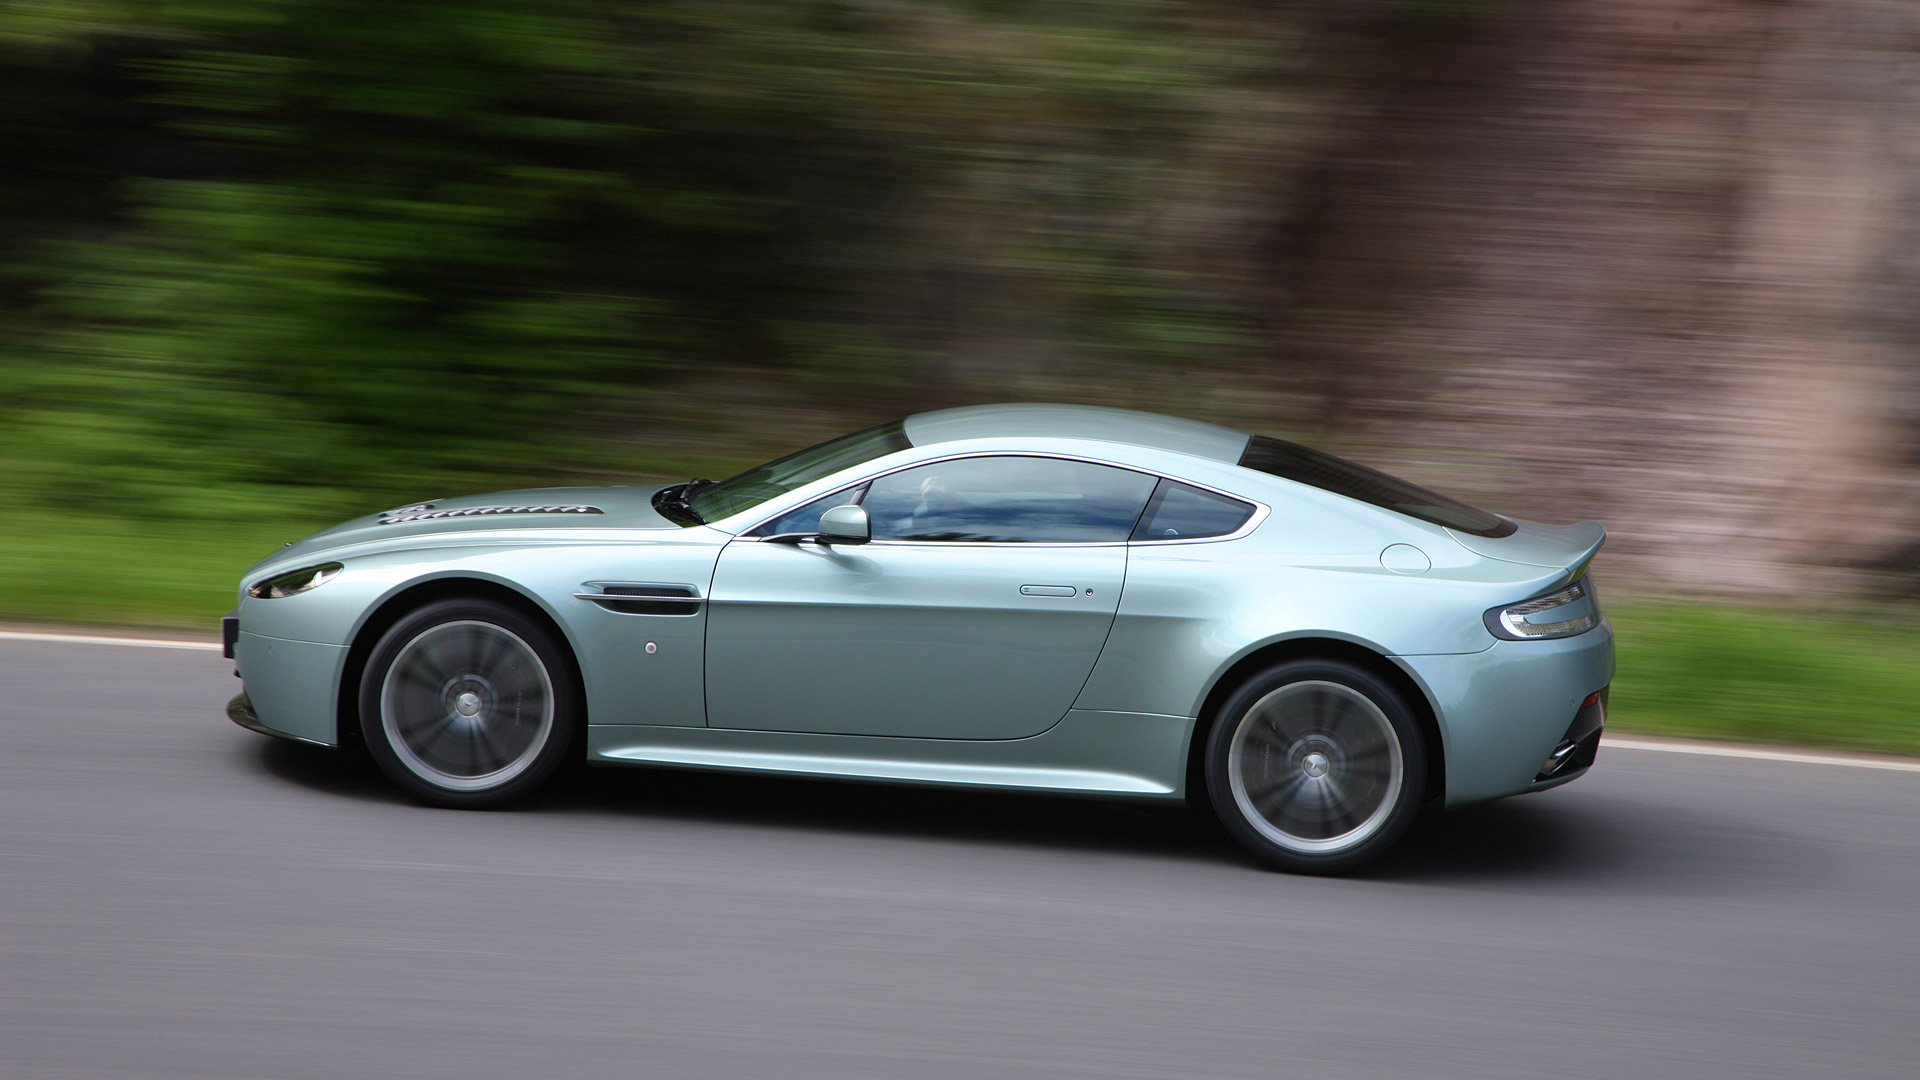  2010 Aston Martin V12 Vantage Wallpaper.